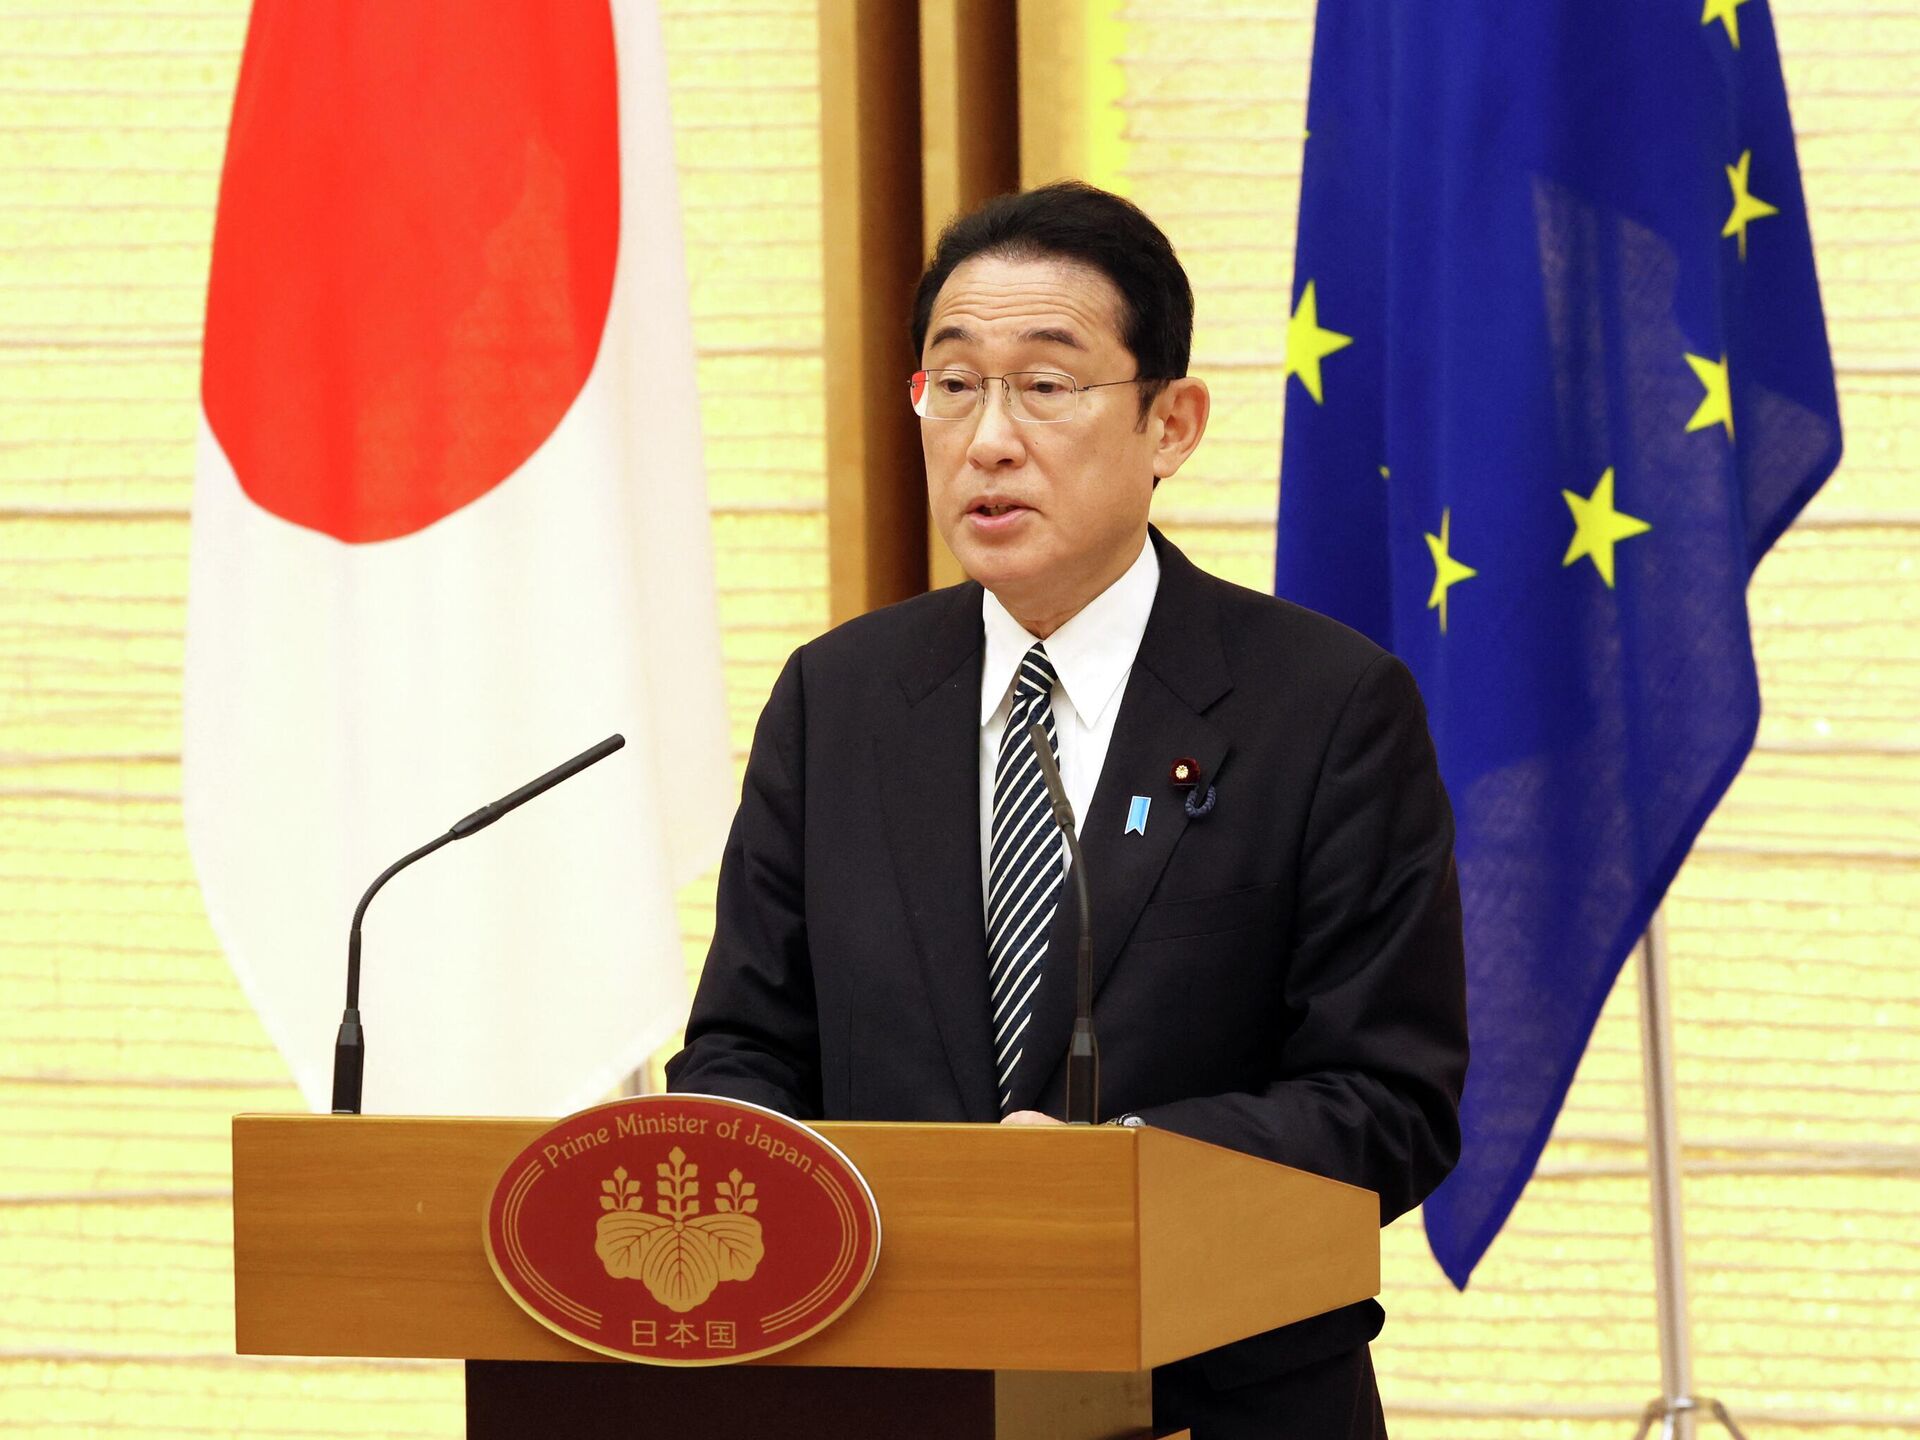 رئيس وزراء اليابان يجري تعديلاً حكومياً يشمل 4 وزراء على خلفية فضيحة مالية